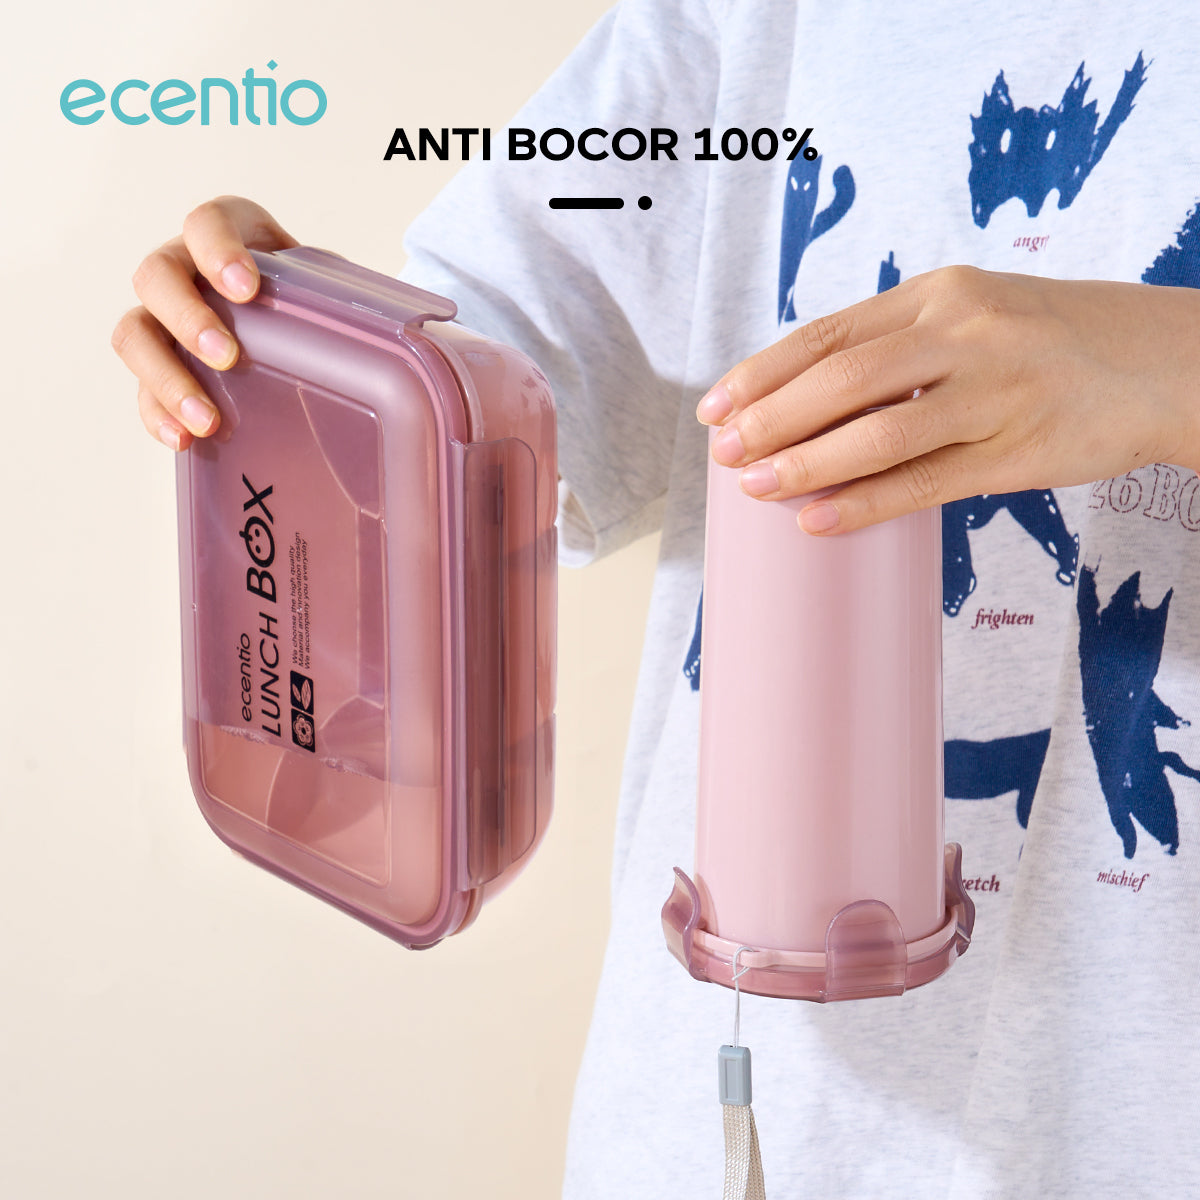 ecentio lunch box set kotak makan 2 Sekat/botol minum/tas bekal cooler bag